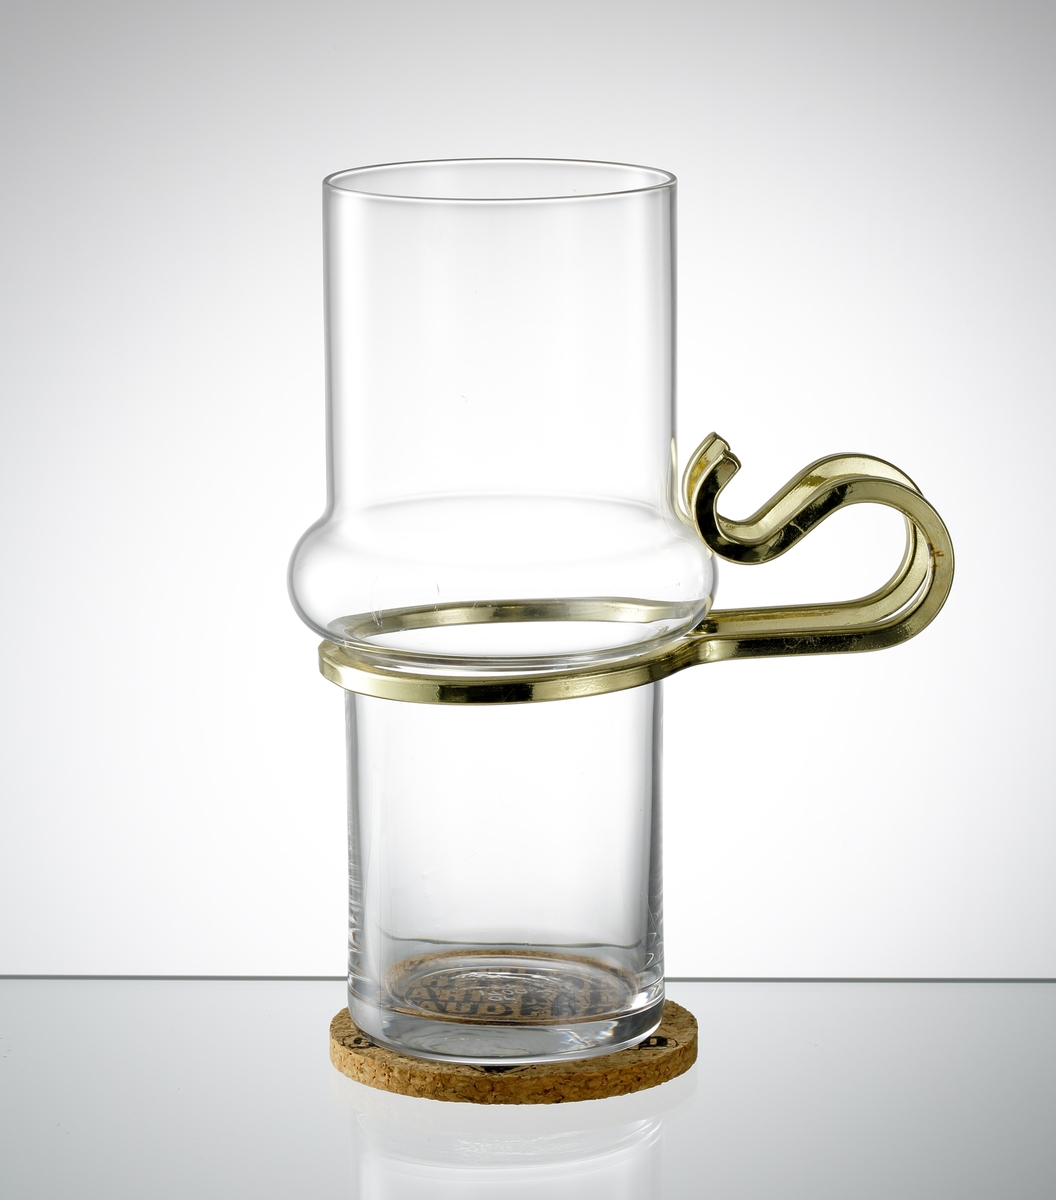 "Varm Kall", formgiven av Lindau & Lindekrantz. Cylindrisk form med vulst på kupans mittdel. Öra i mässing. Tillhörande underlägg i kork.